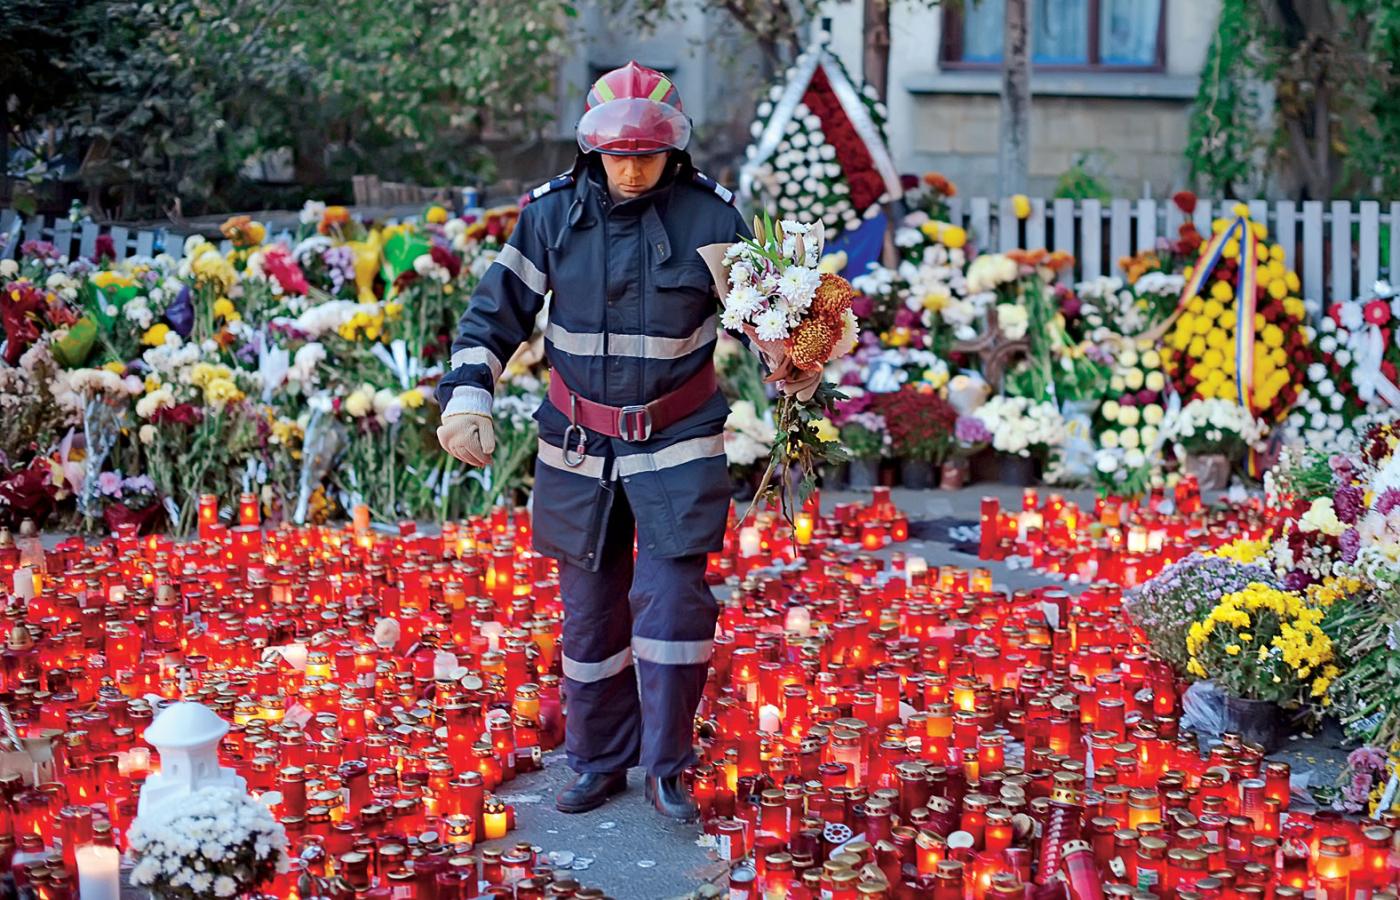 Wokół klubu Colectiv, gdzie doszło do tragicznego pożaru, wstrząśnięci mieszkańcy pozostawili morze kwiatów i lampek.